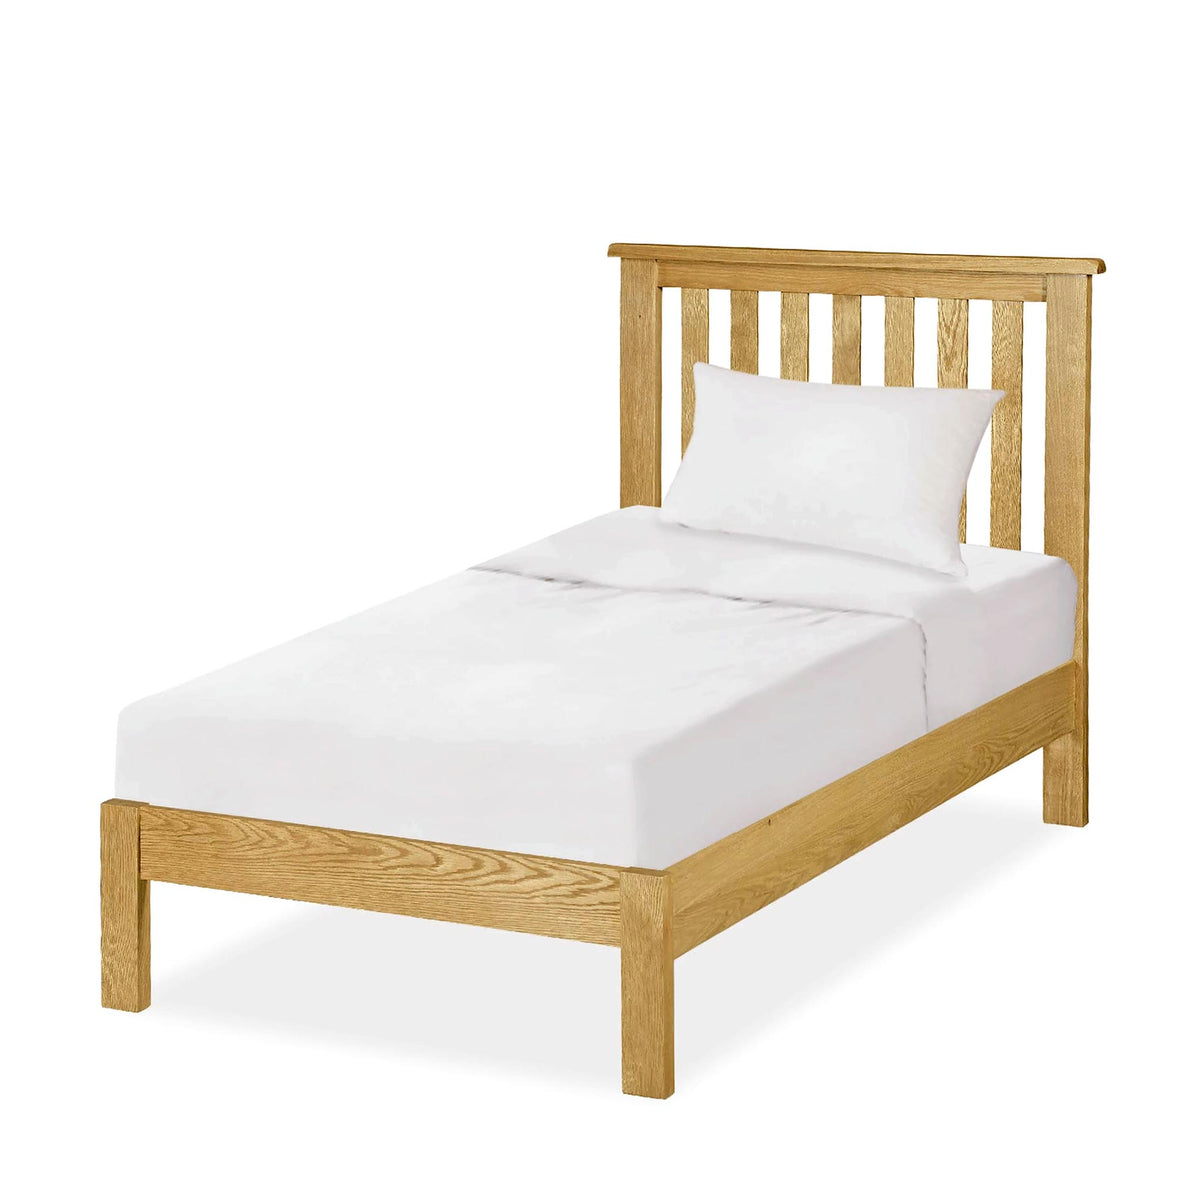 Lanner Oak Single Bed Frame by Roseland Furniture